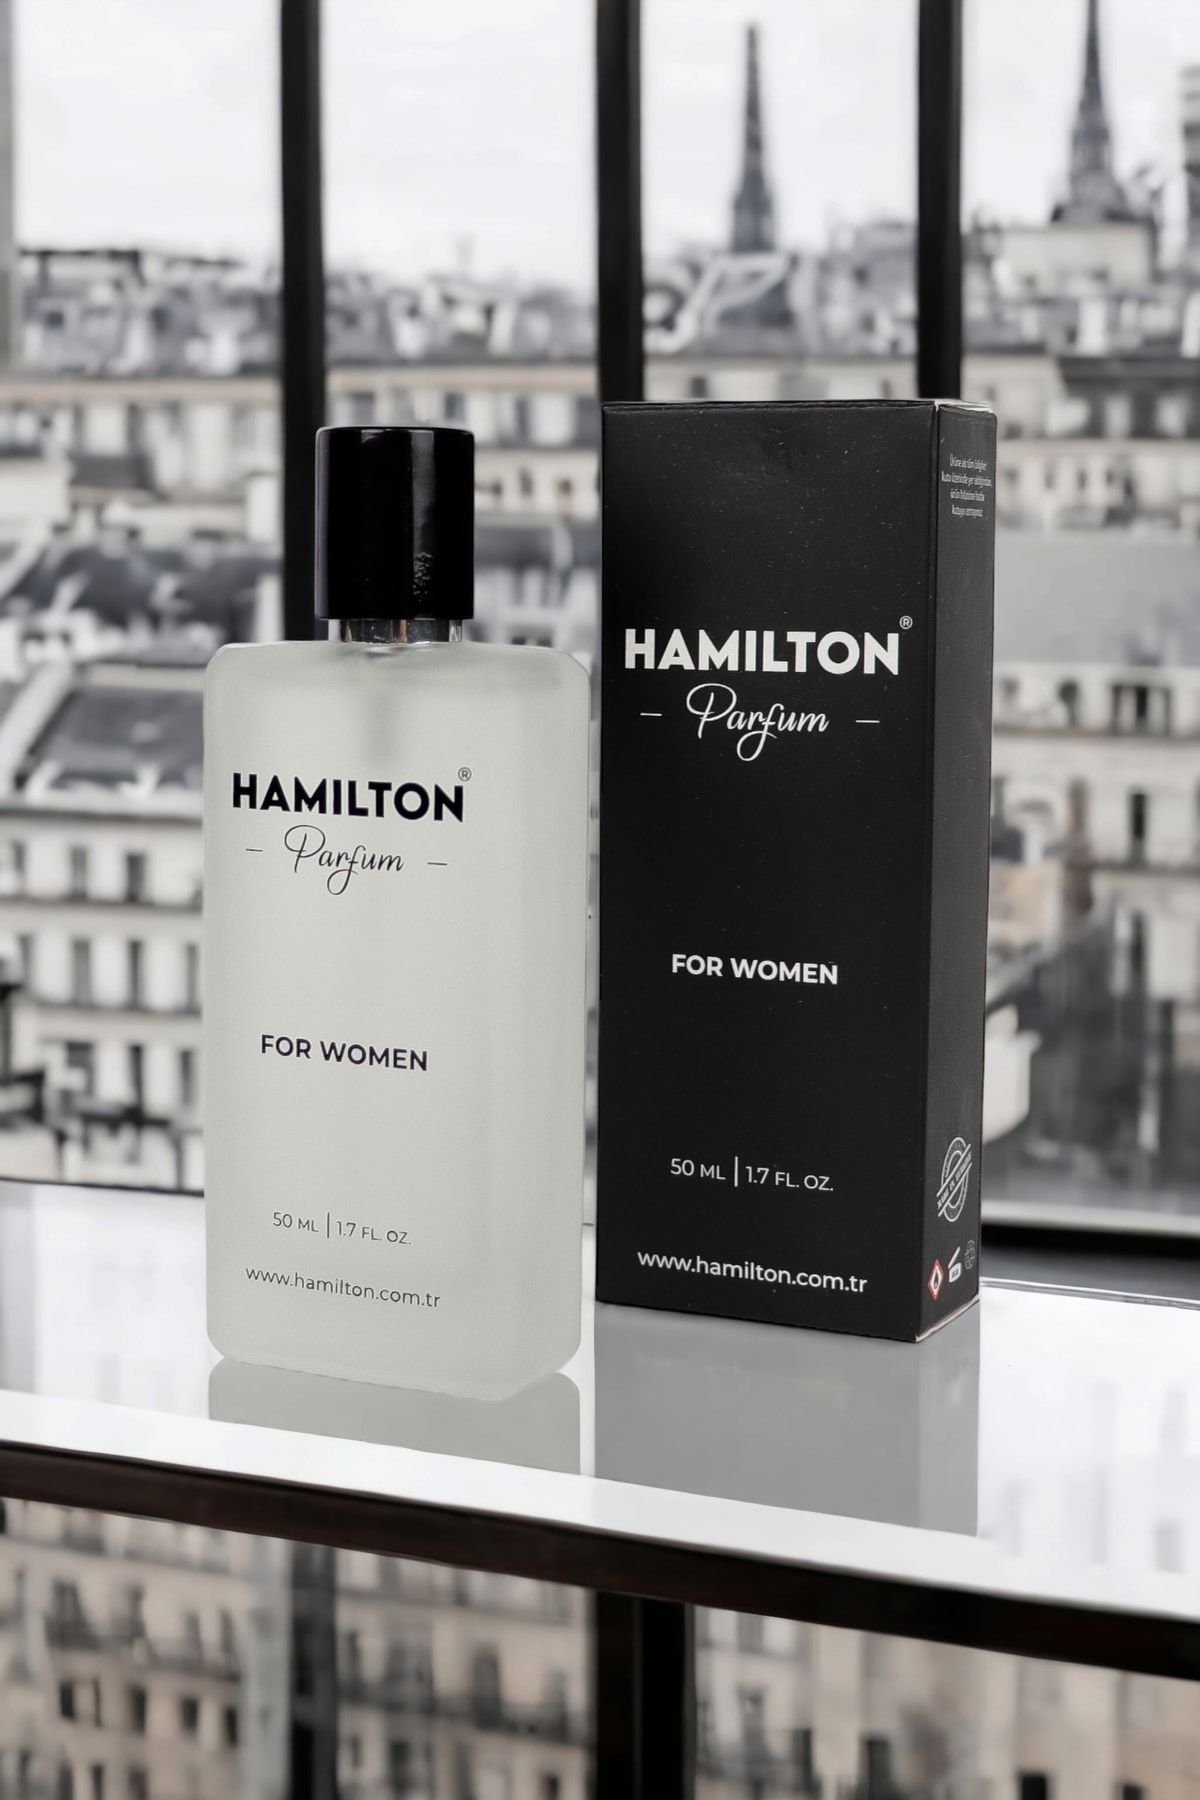 HAMILTON B232 Meyvemsi Kadın Parfümü Edp 50 ml